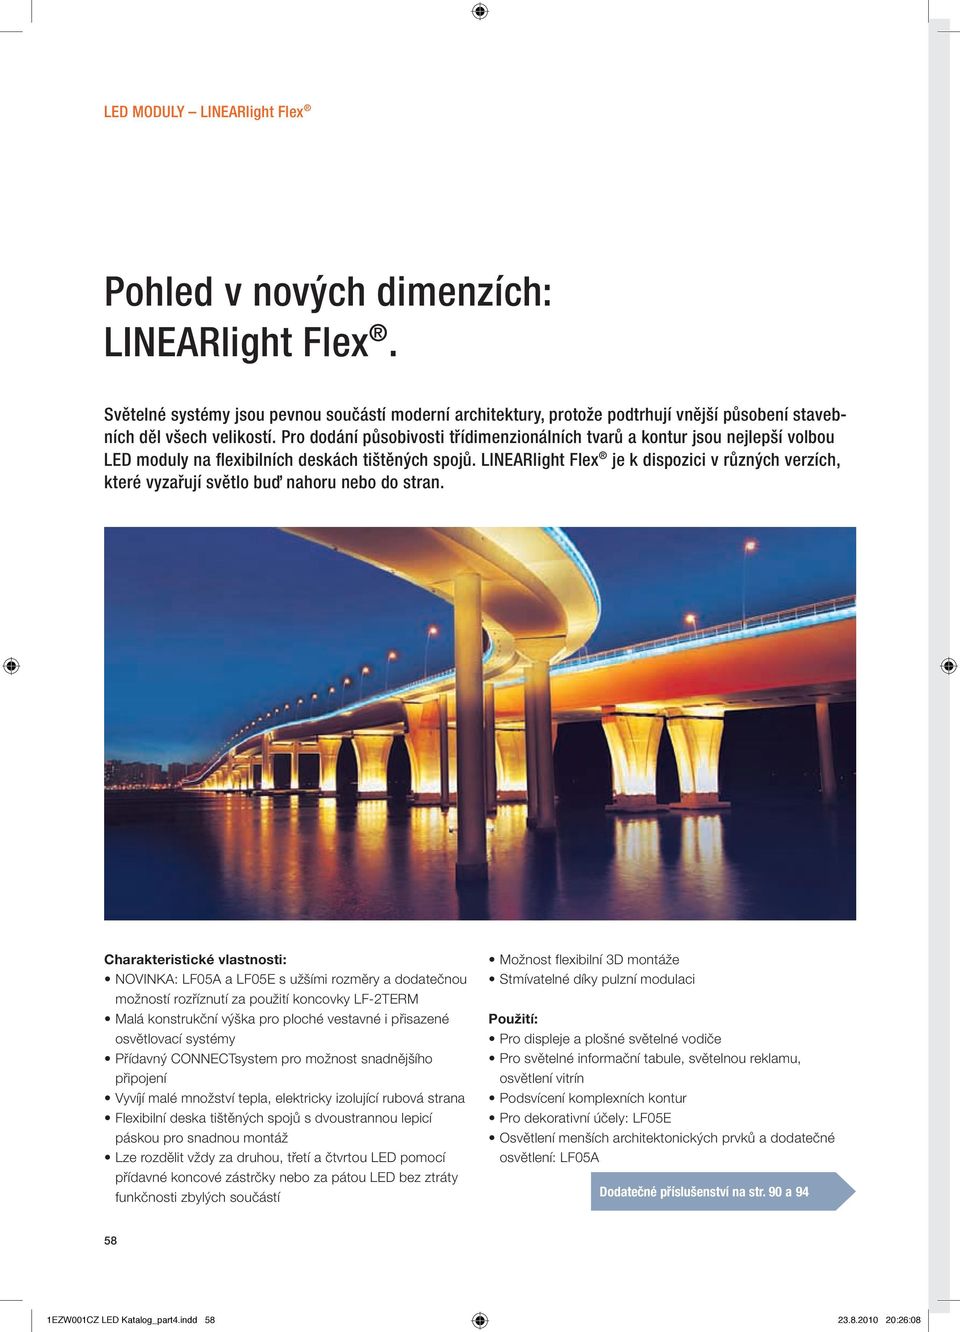 LINEARlight Flex je k dispozici v různých verzích, které vyzařují světlo buď nahoru nebo do stran.